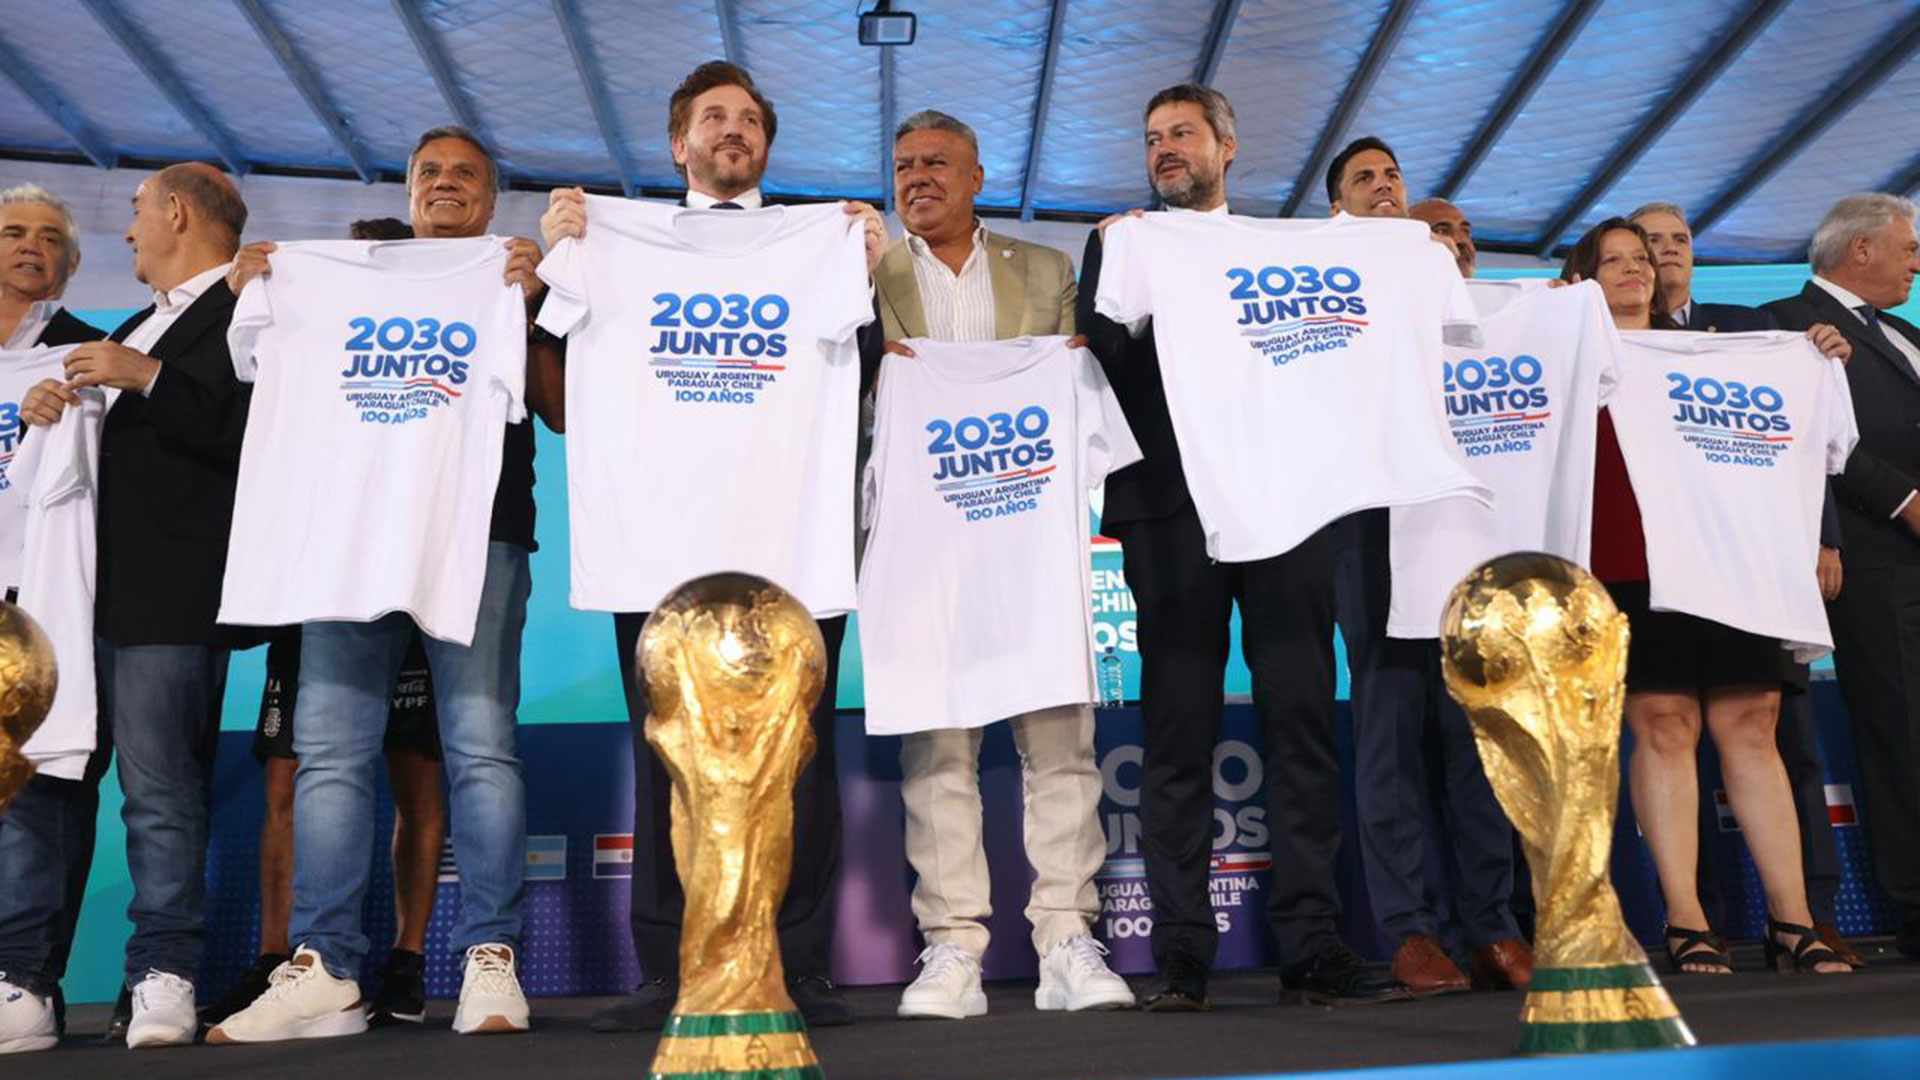 Las Copas del Mundo, presentes en la presentación del Mundial 2030 en Sudamérica